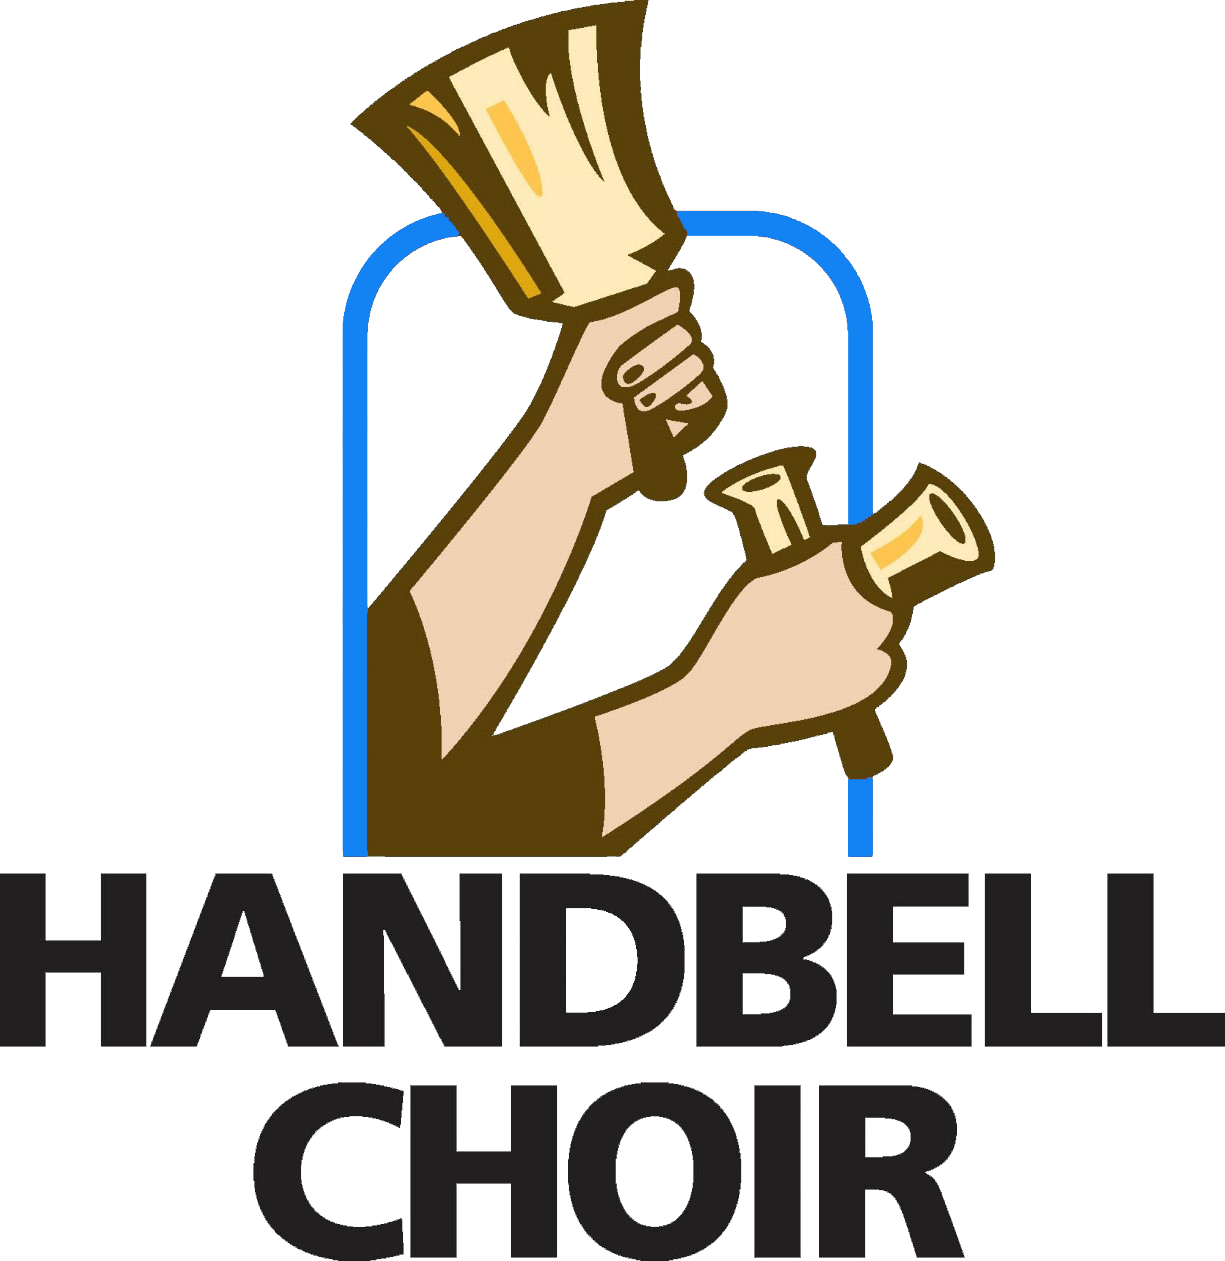 Bell Choir Begin - Hand Bells Clip Art (1225x1261)